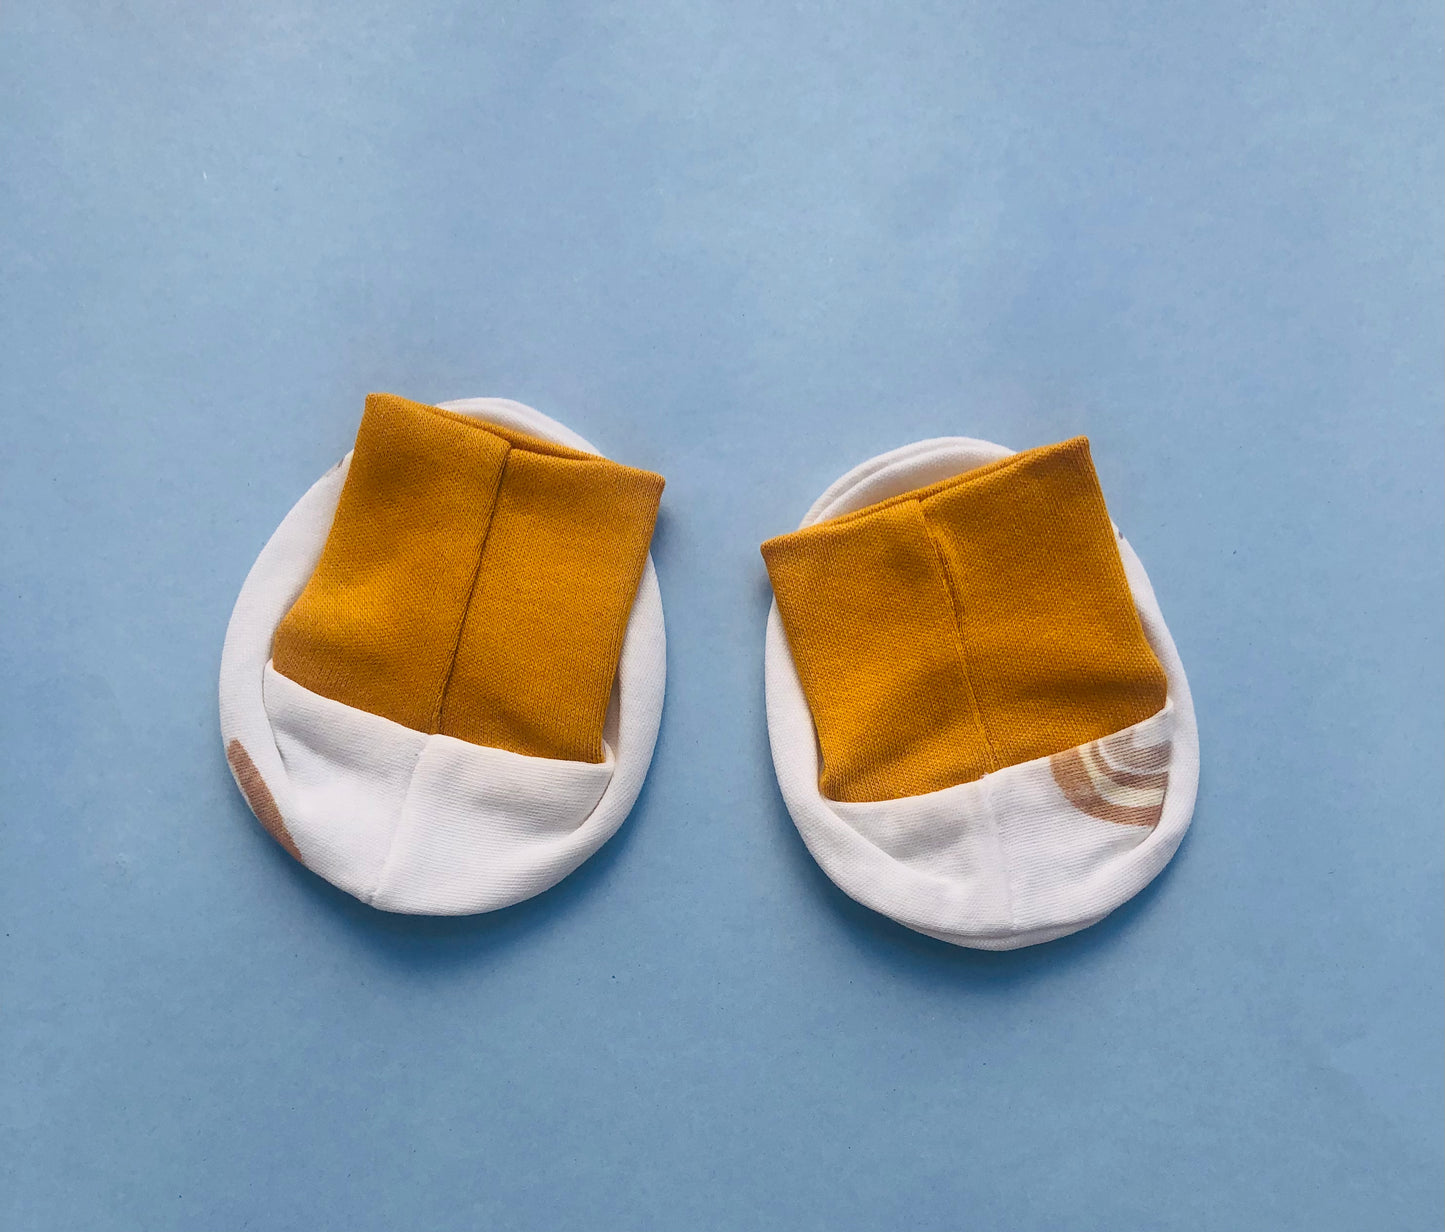 Baby Half Sleeve Romper/Bodysuit/Onesie, Cap, Booties, Mittens Set/Newborn Essentials (0-3 Months, Pack of 4)(White with yellow rainbow)